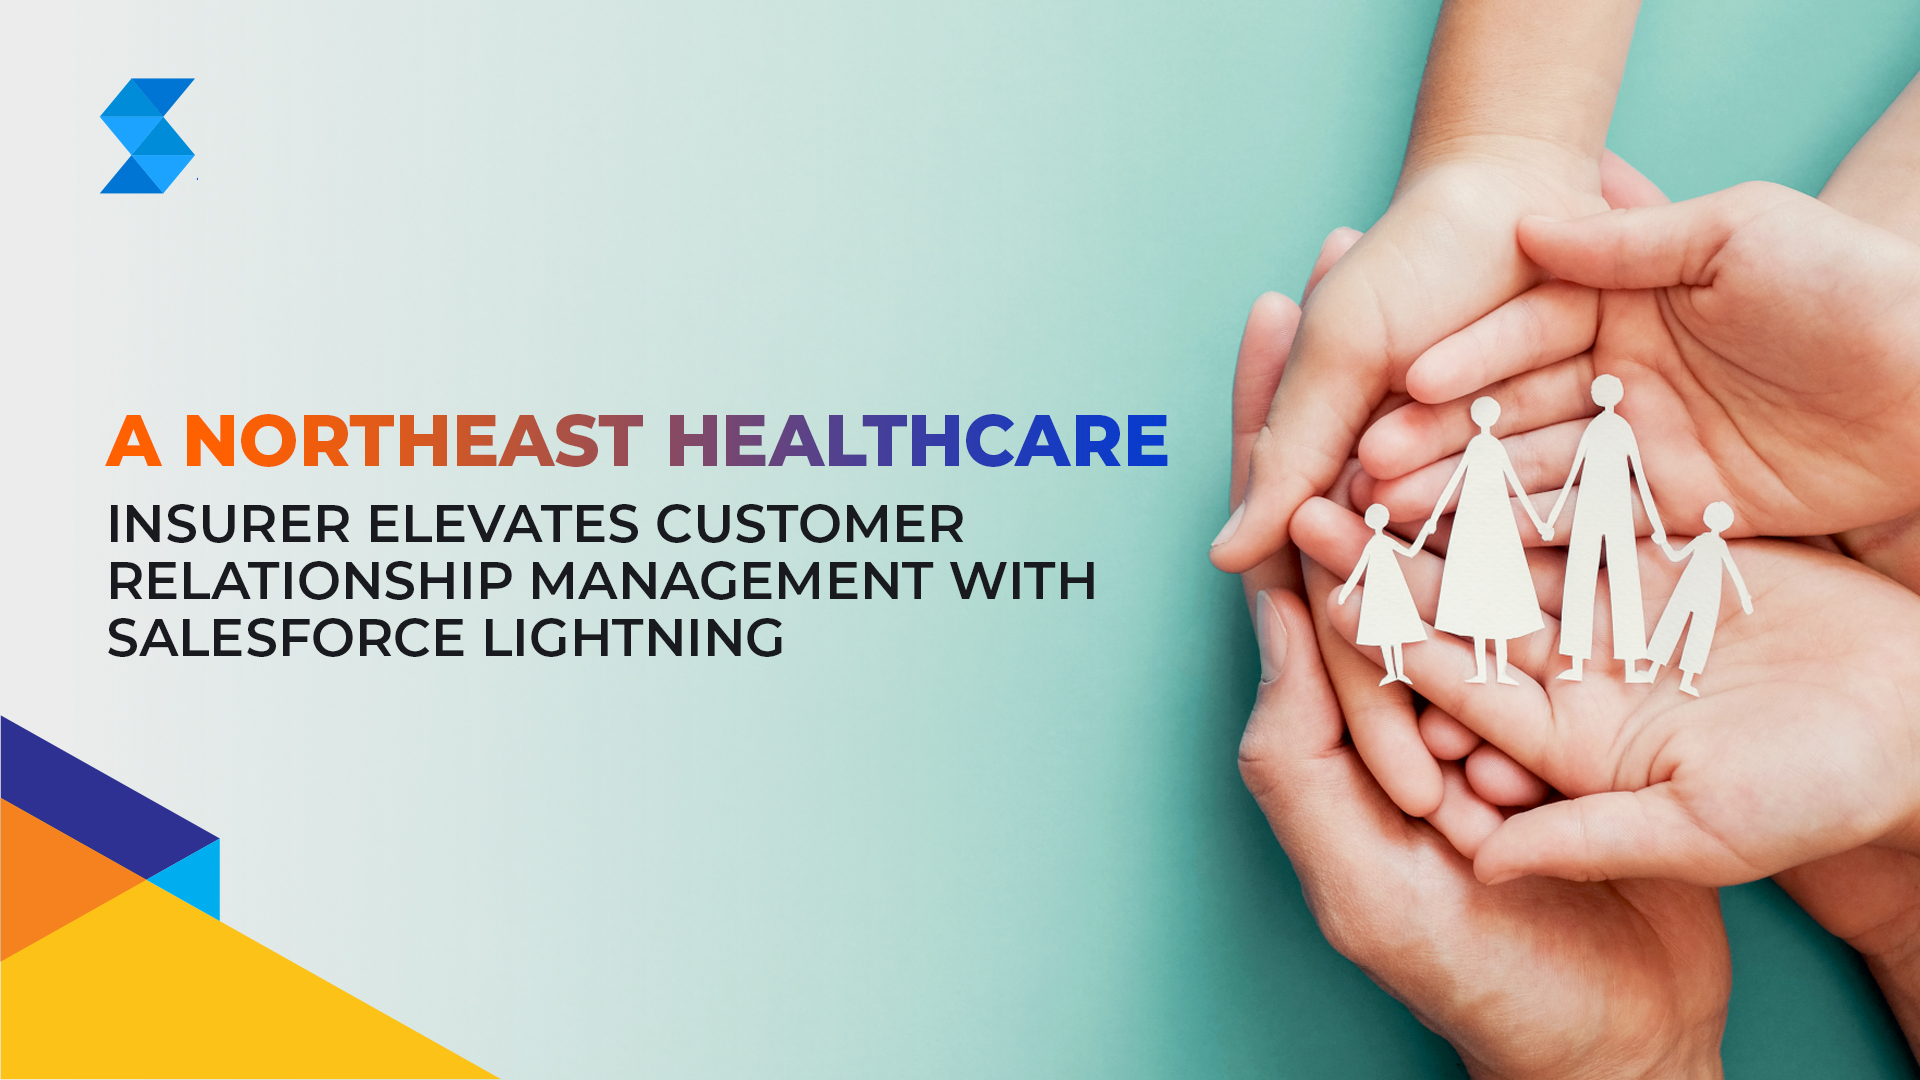 A Northeast Healthcare Insurer Elevates Customer Relationship Management with Salesforce Lightning